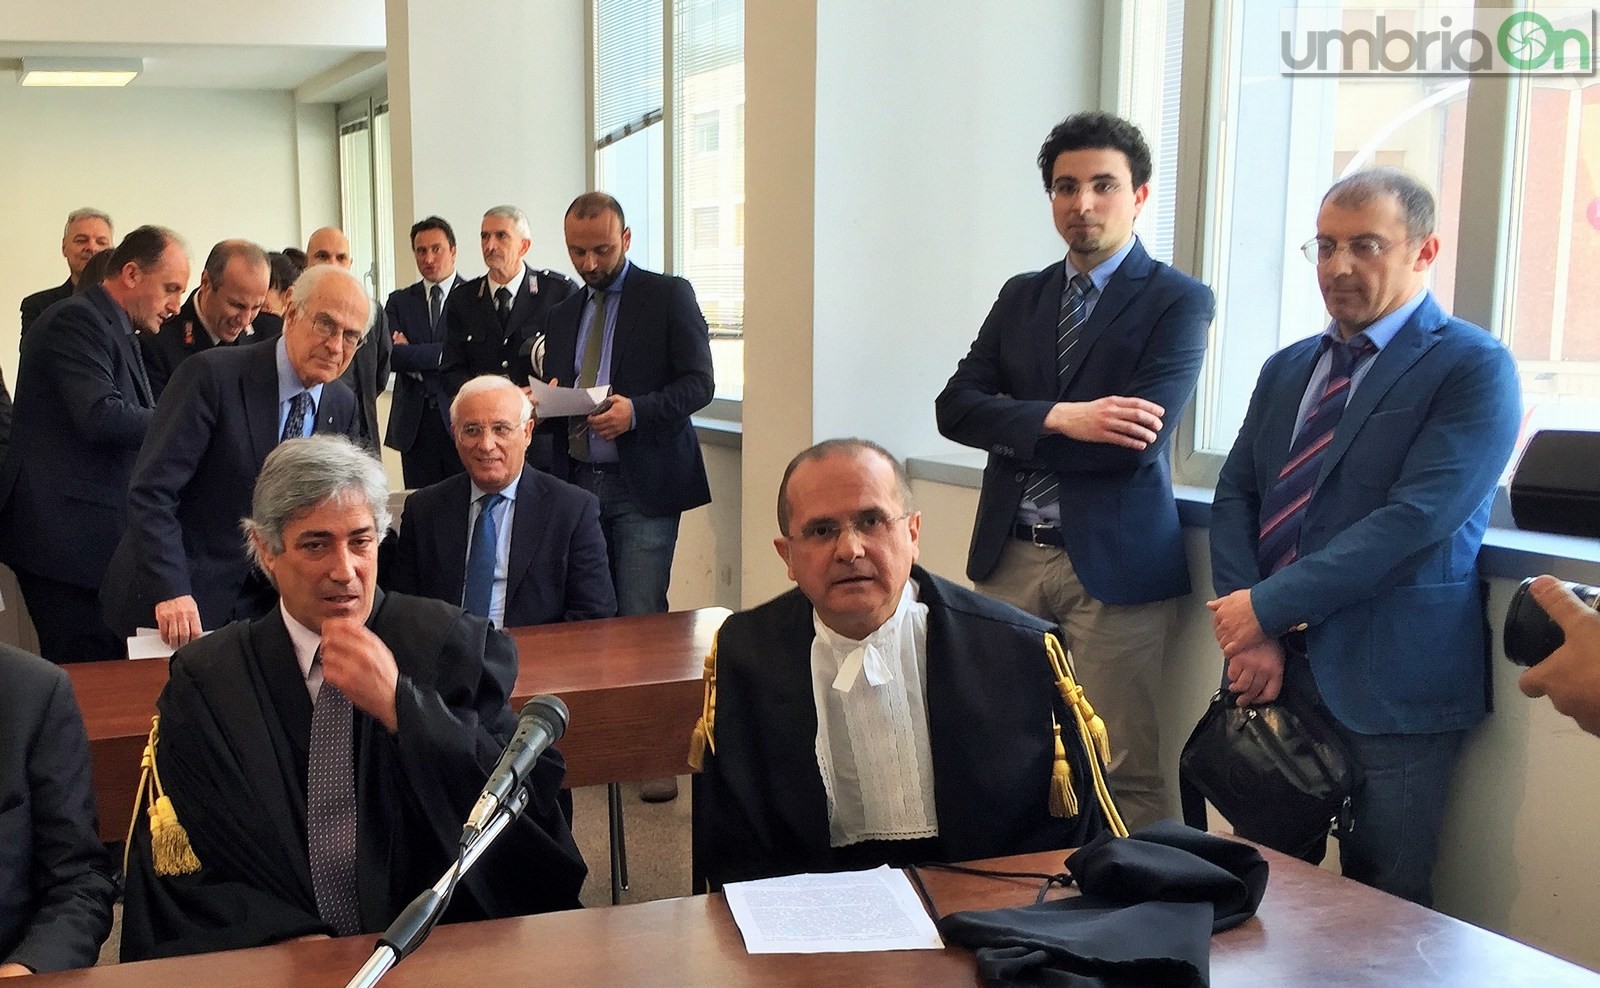 Insediamento nuovo procuratore Terni, Alberto Liguori, giuramento tribunale - 12 aprile 2016 (5)